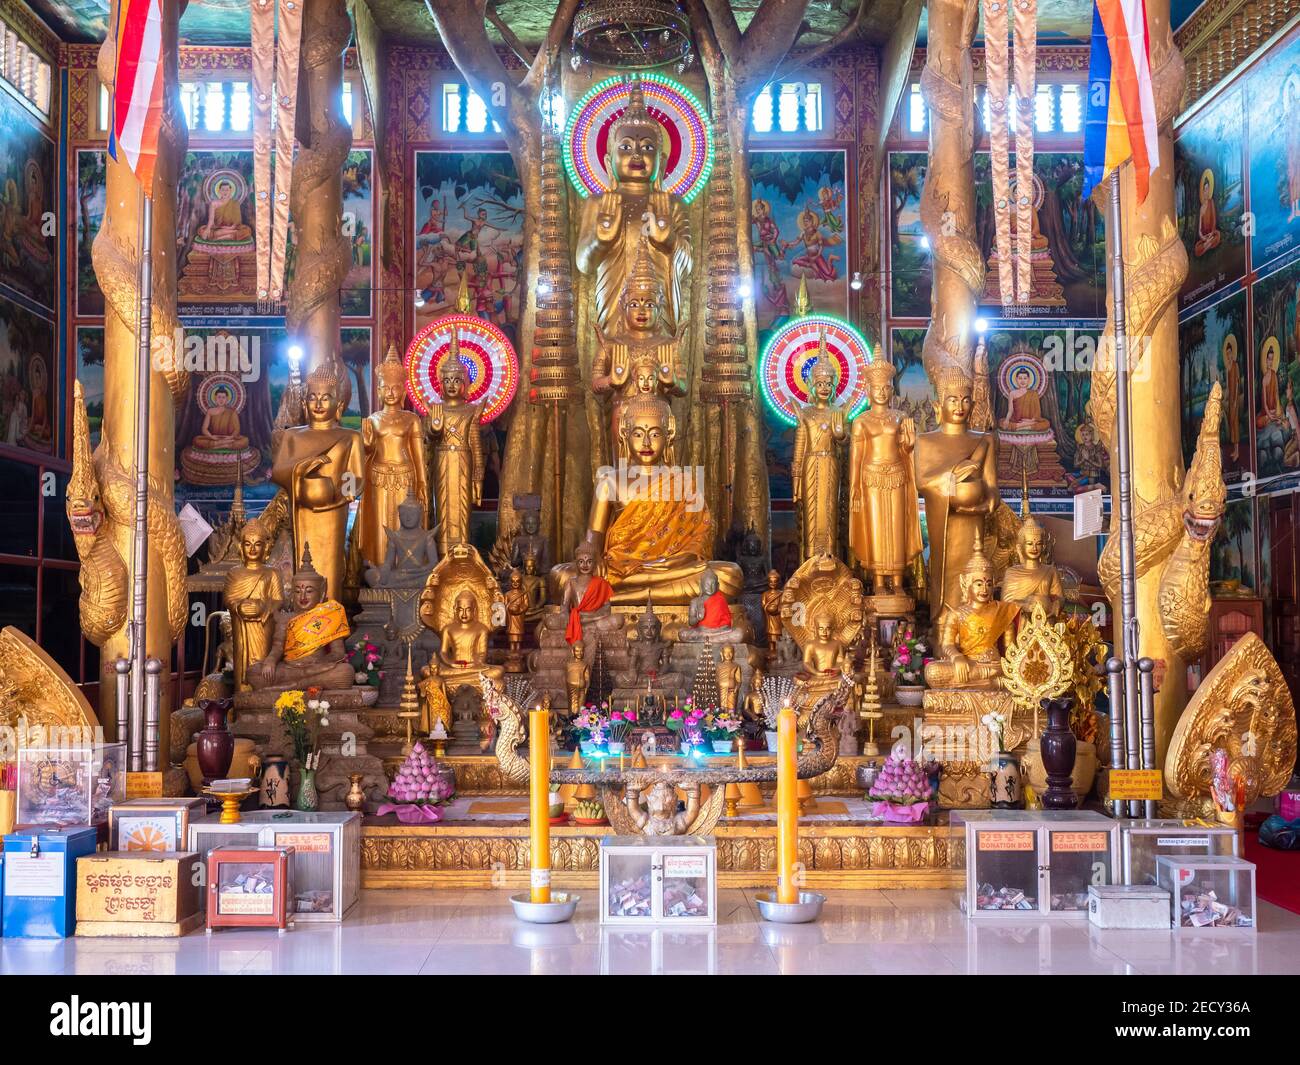 Des images de Bouddha d'or et des décorations murales au Wat Kean Kliang, un temple bouddhiste à Phnom Penh, au Cambodge, situé entre le Tonle SAP et la rive du Mékong Banque D'Images